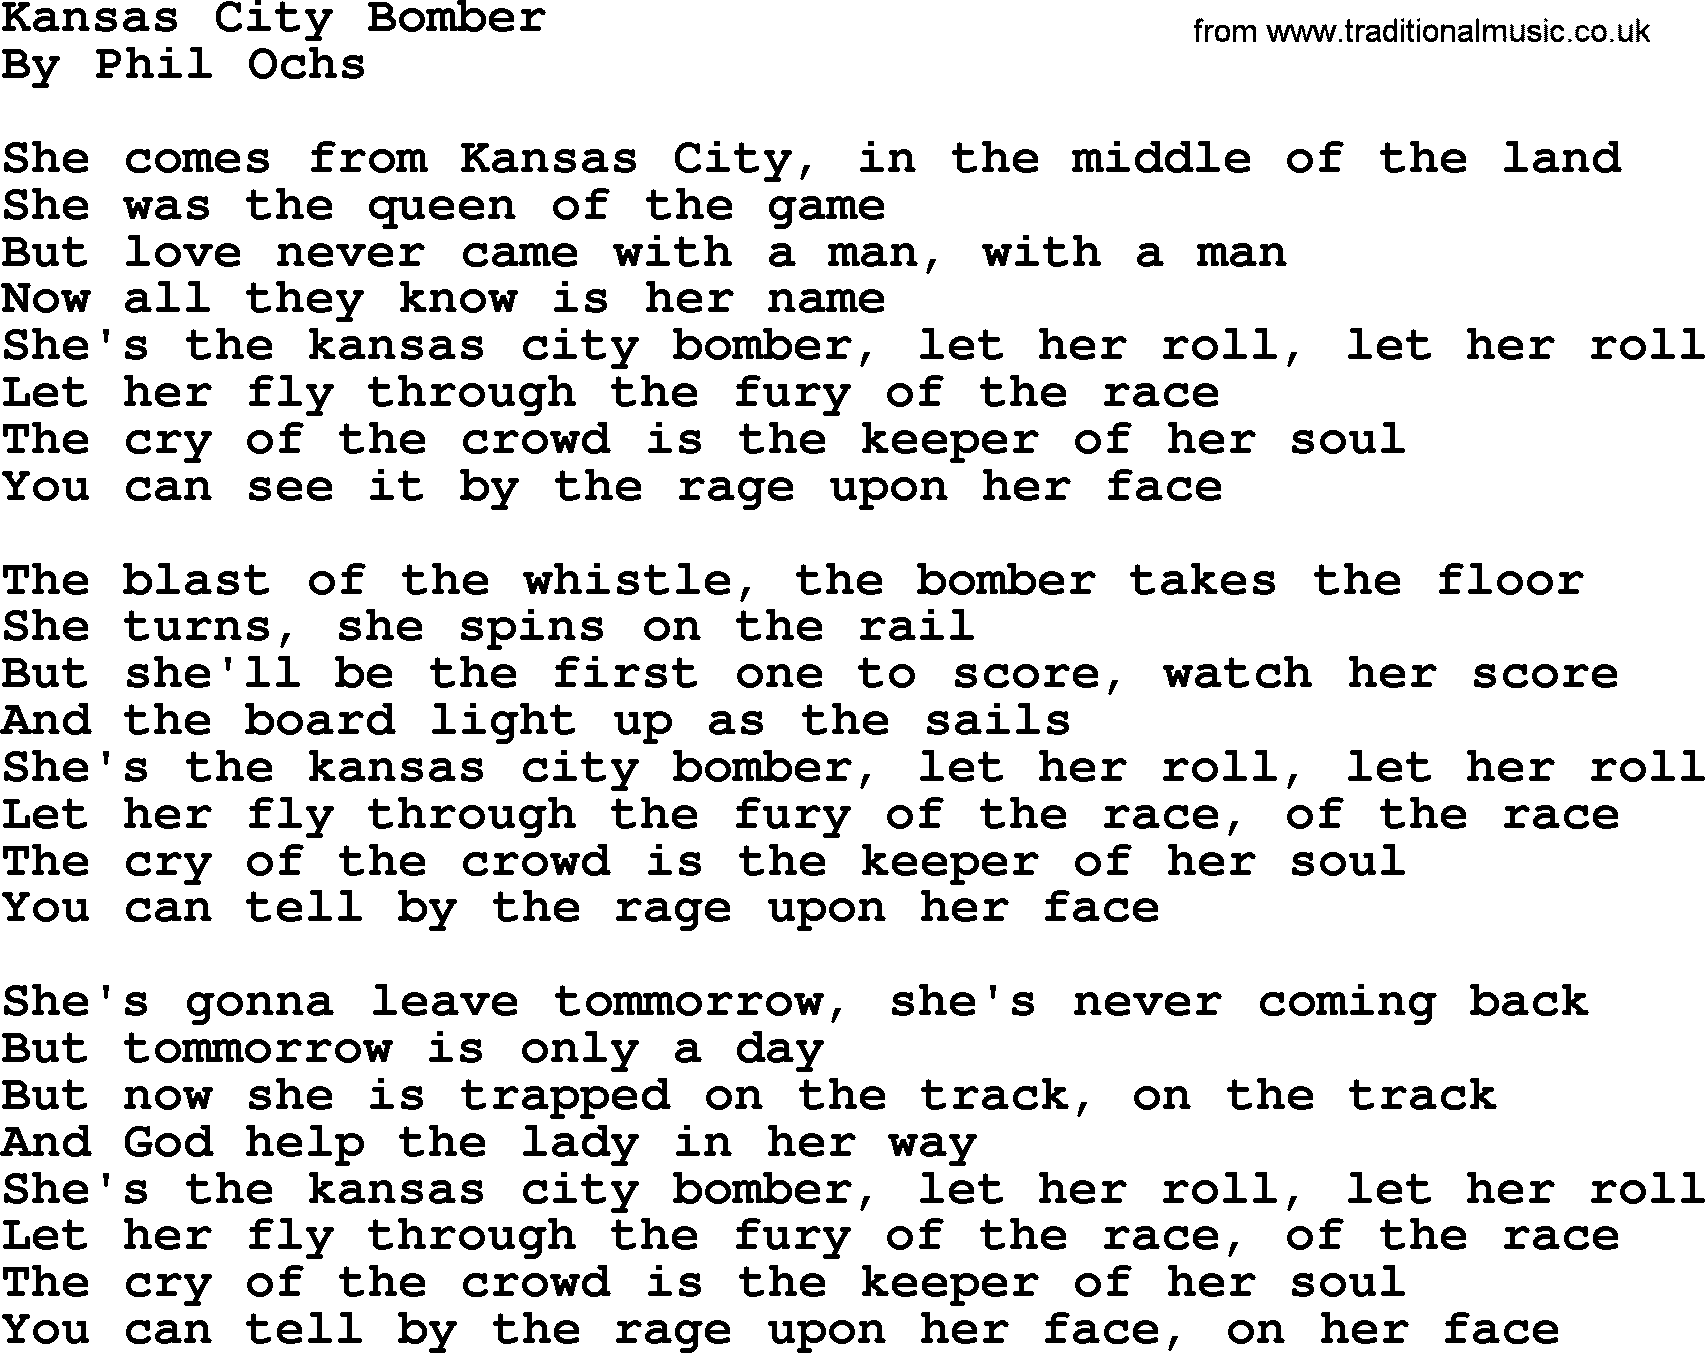 Phil Ochs song Kansas City Bomber, lyrics